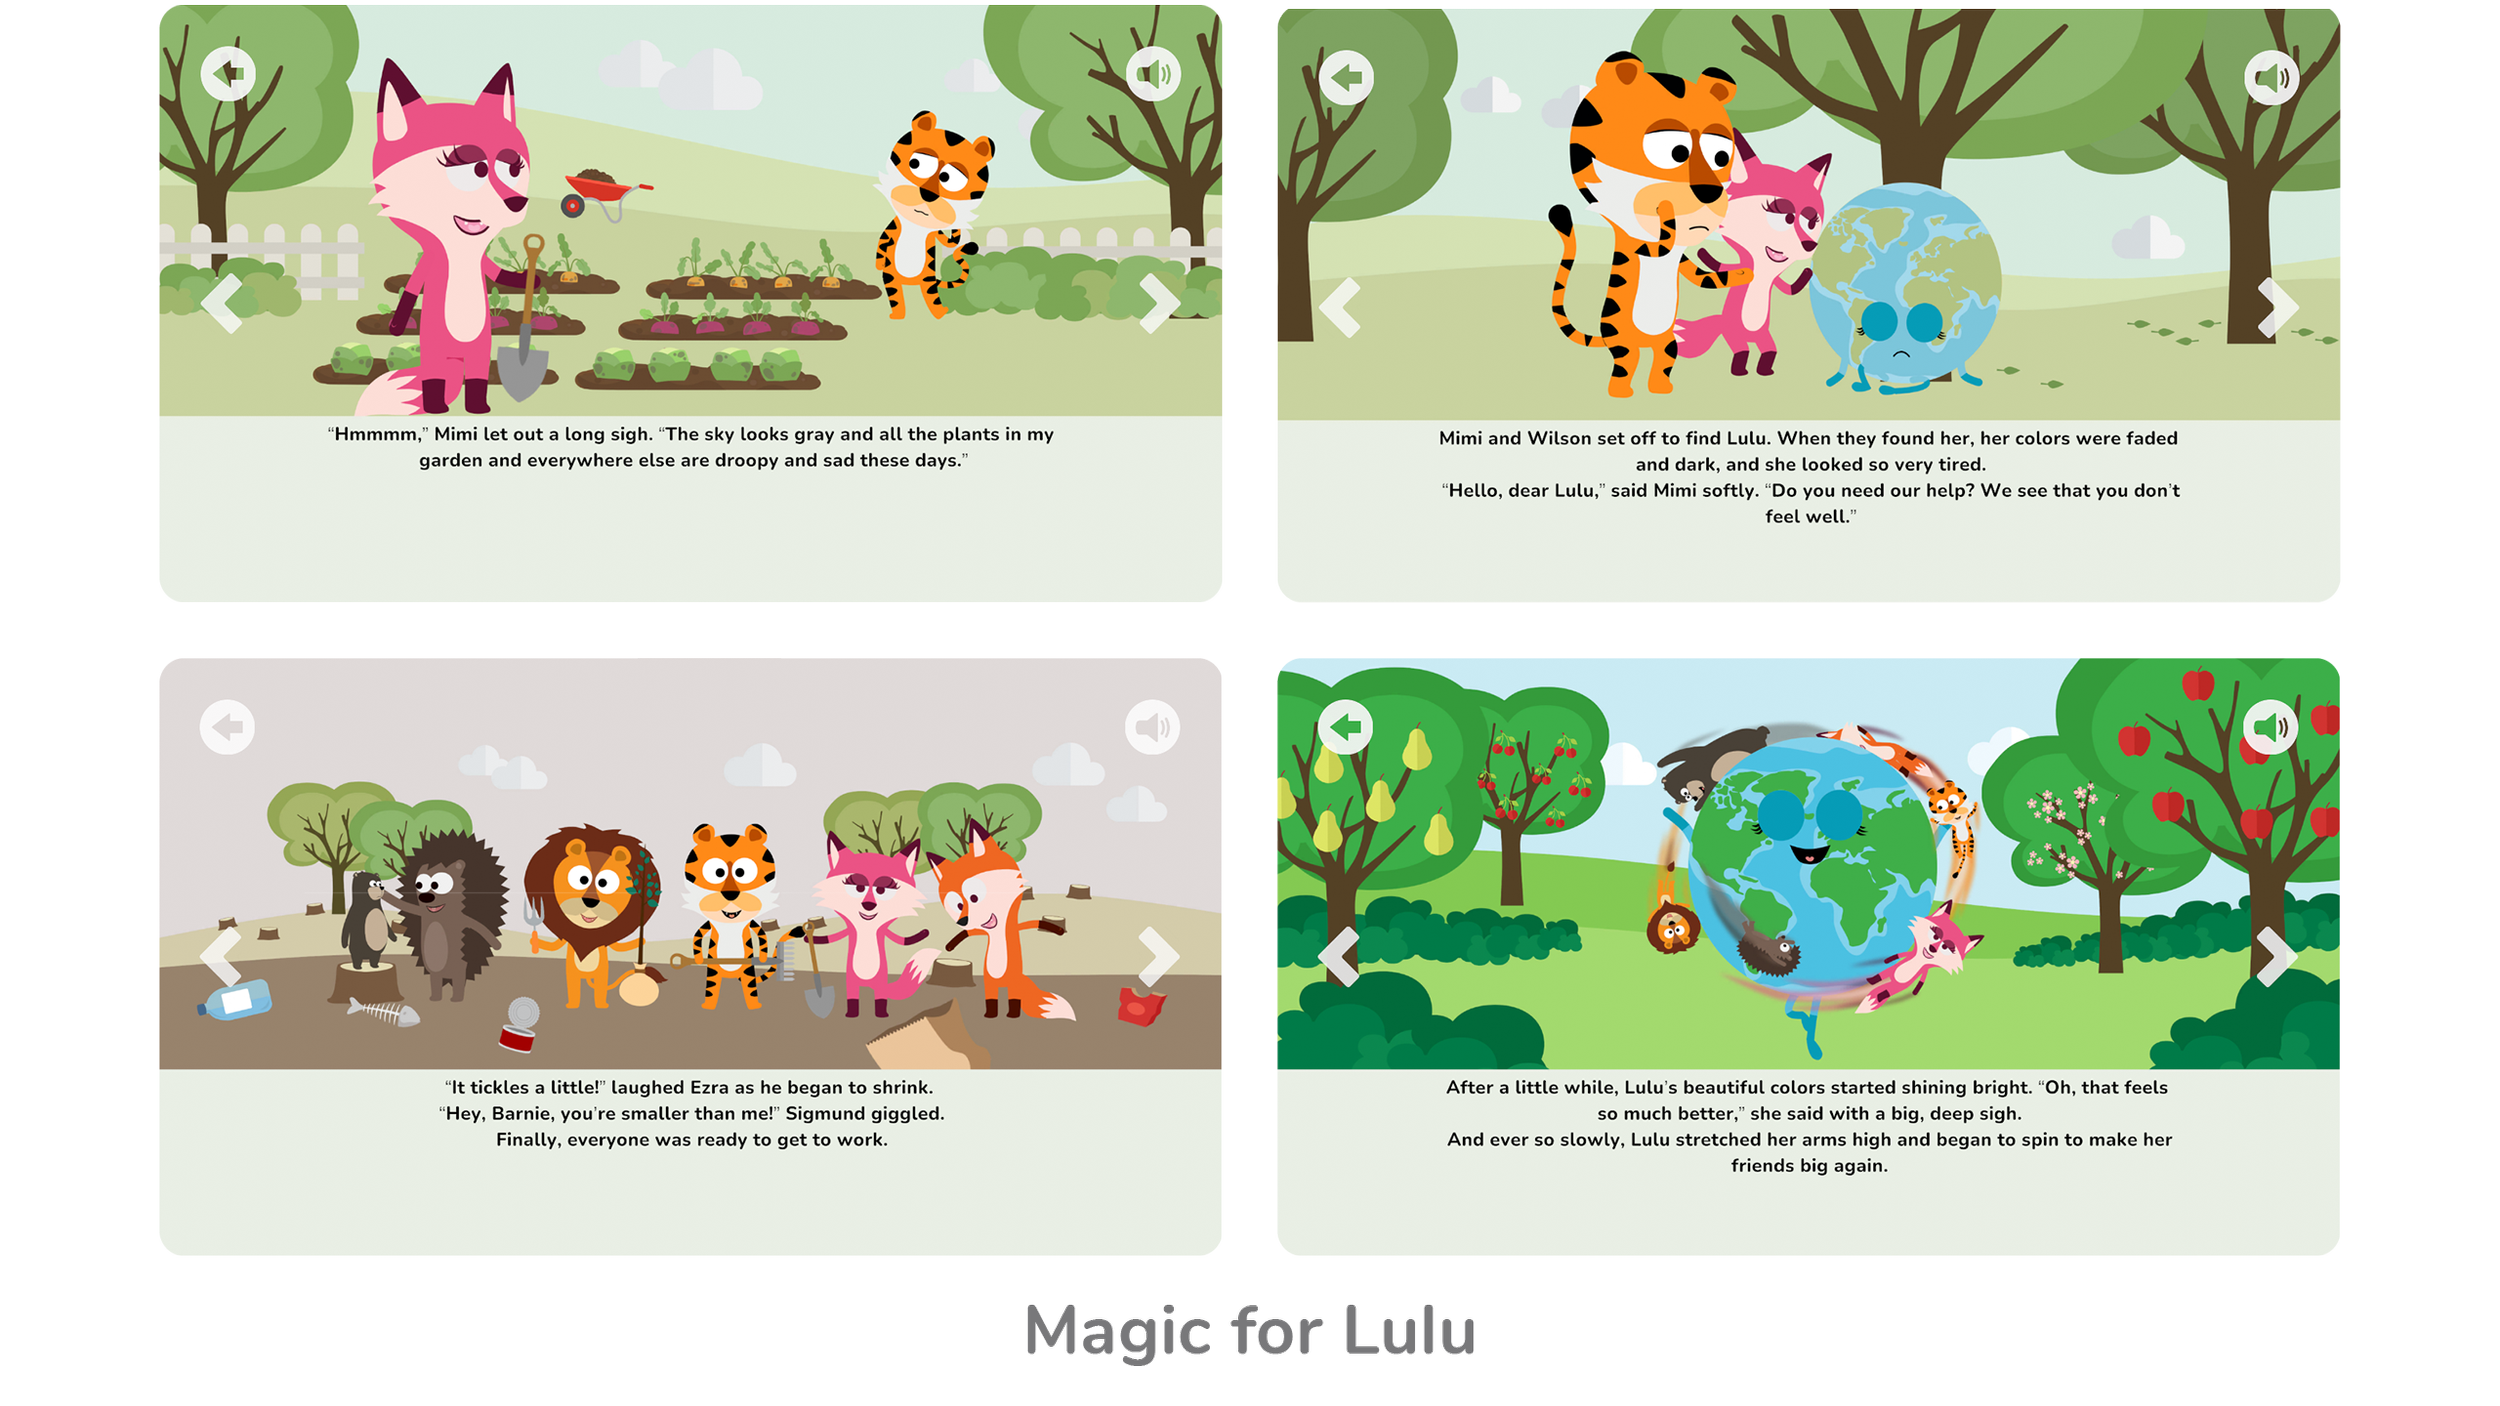 Magic for Lulu Book (Copy)